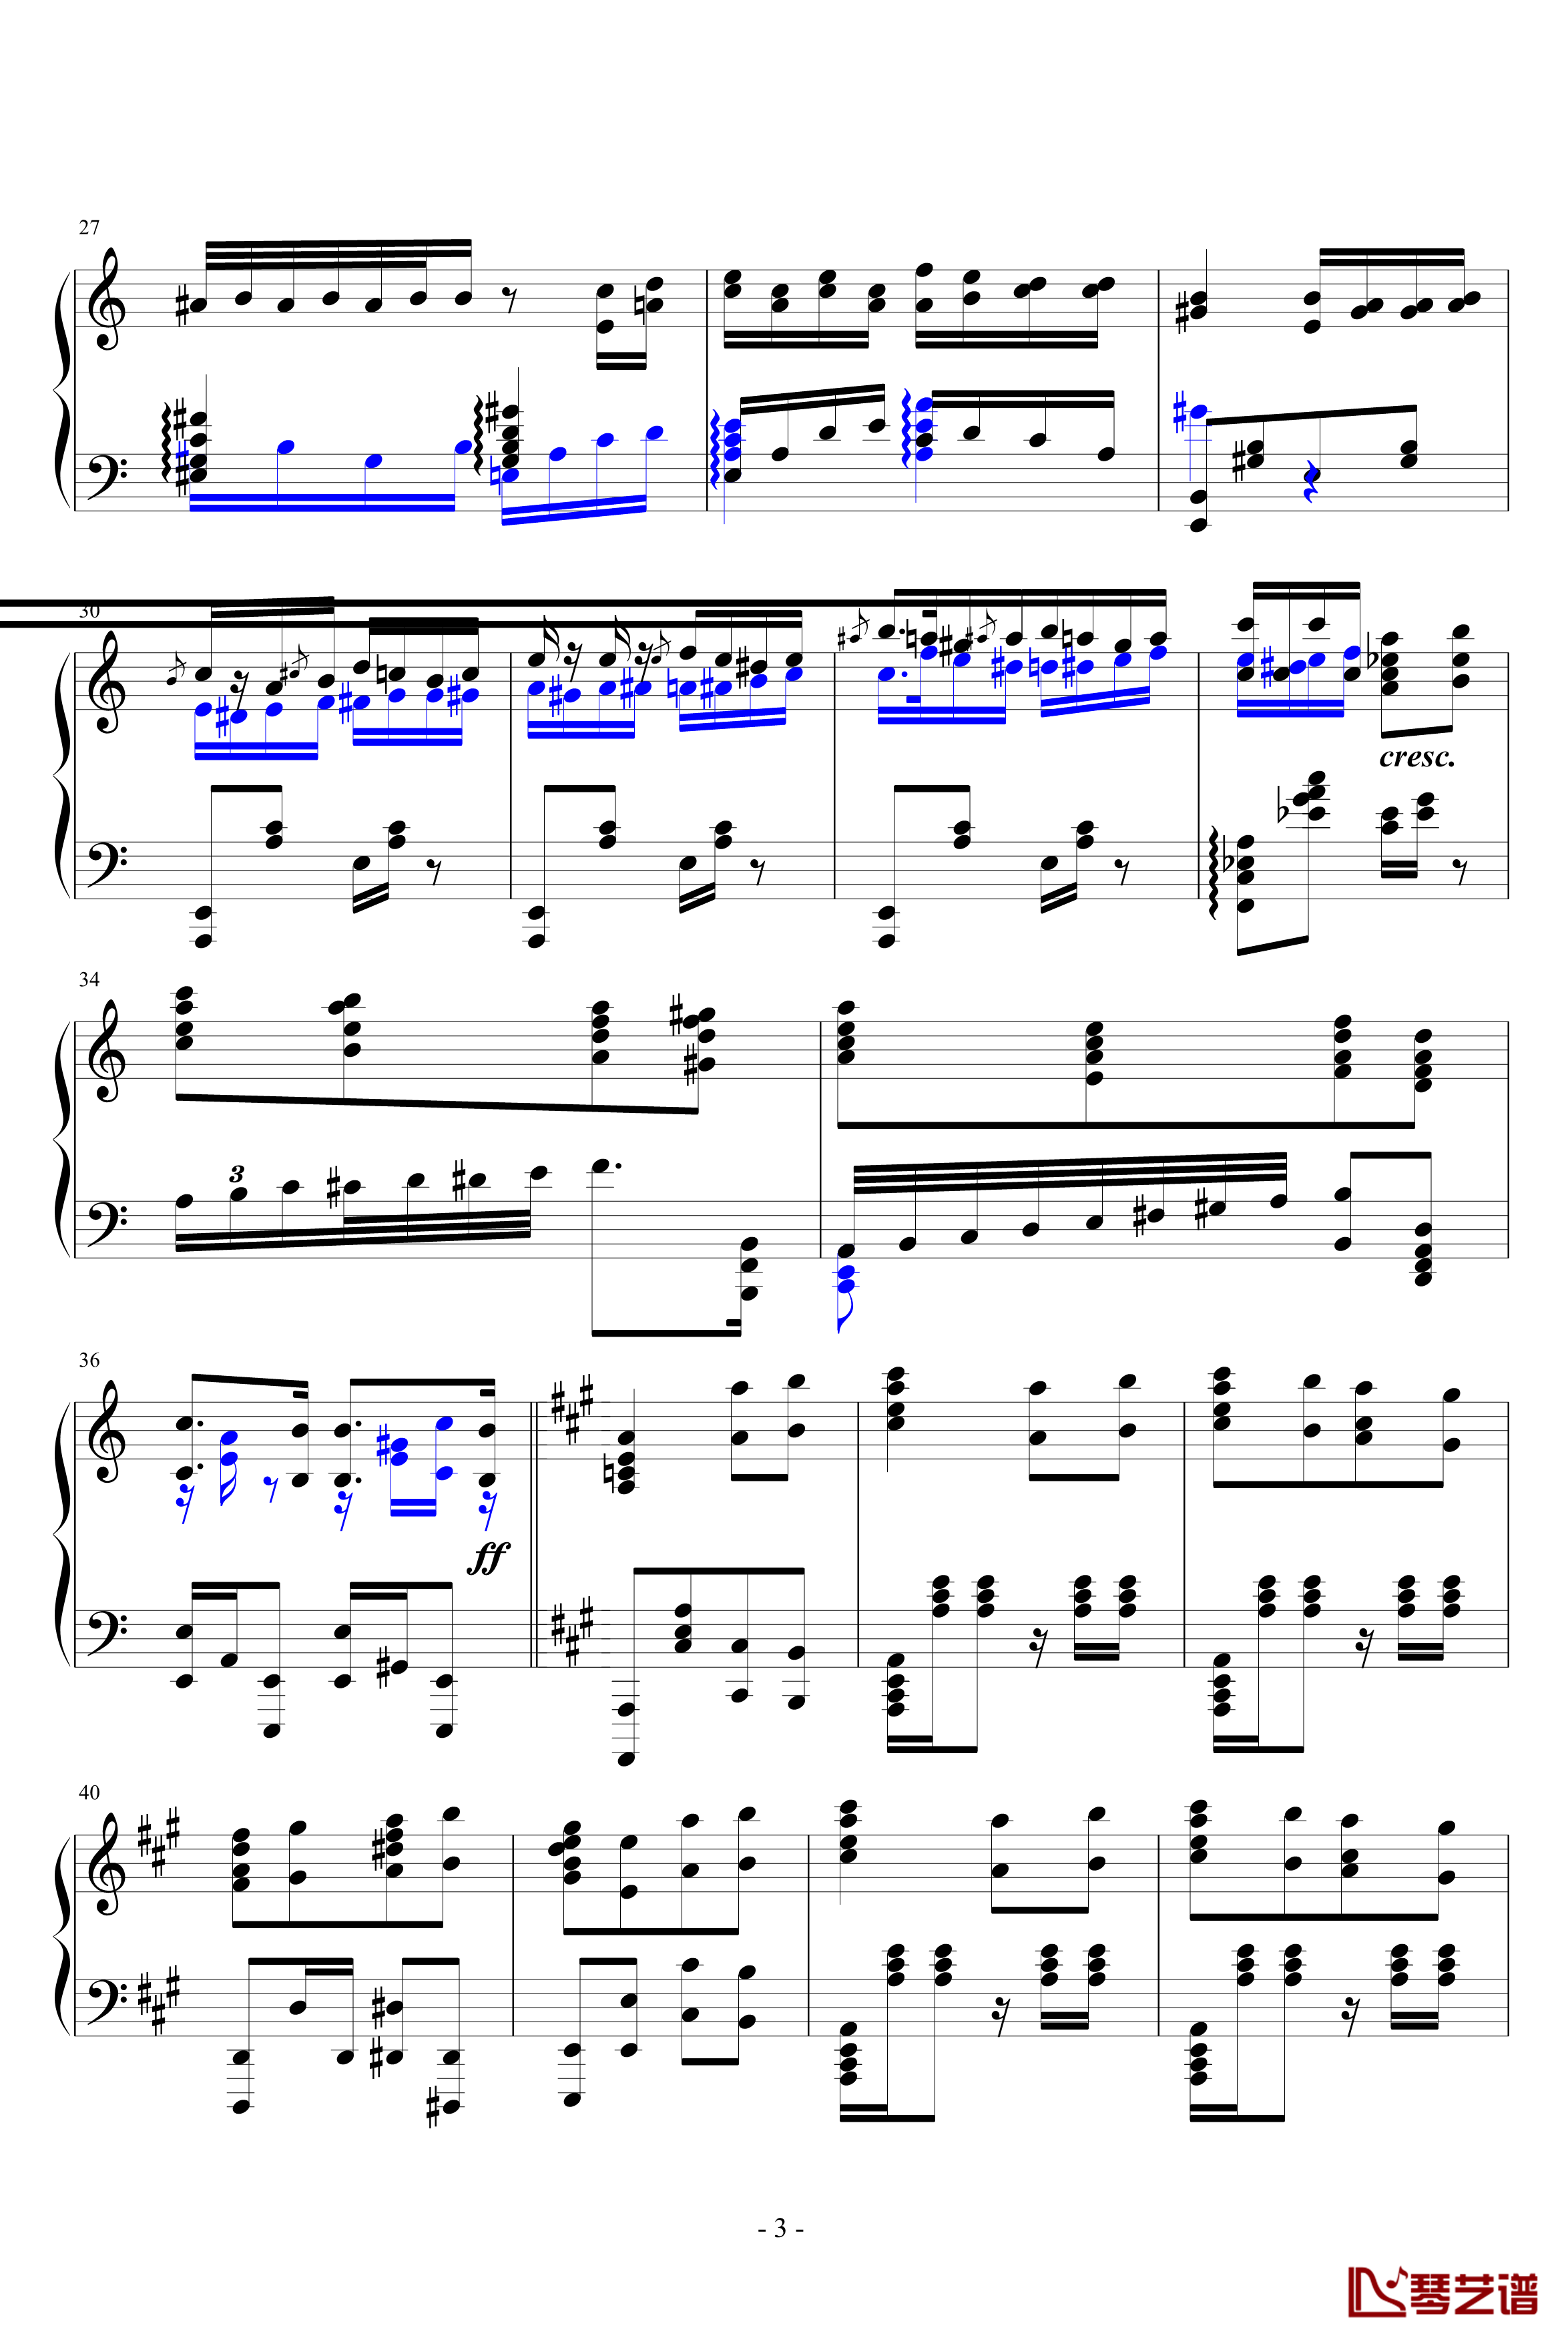 瓦洛多斯土耳其钢琴谱-爵士版-完成品-瓦洛多斯3